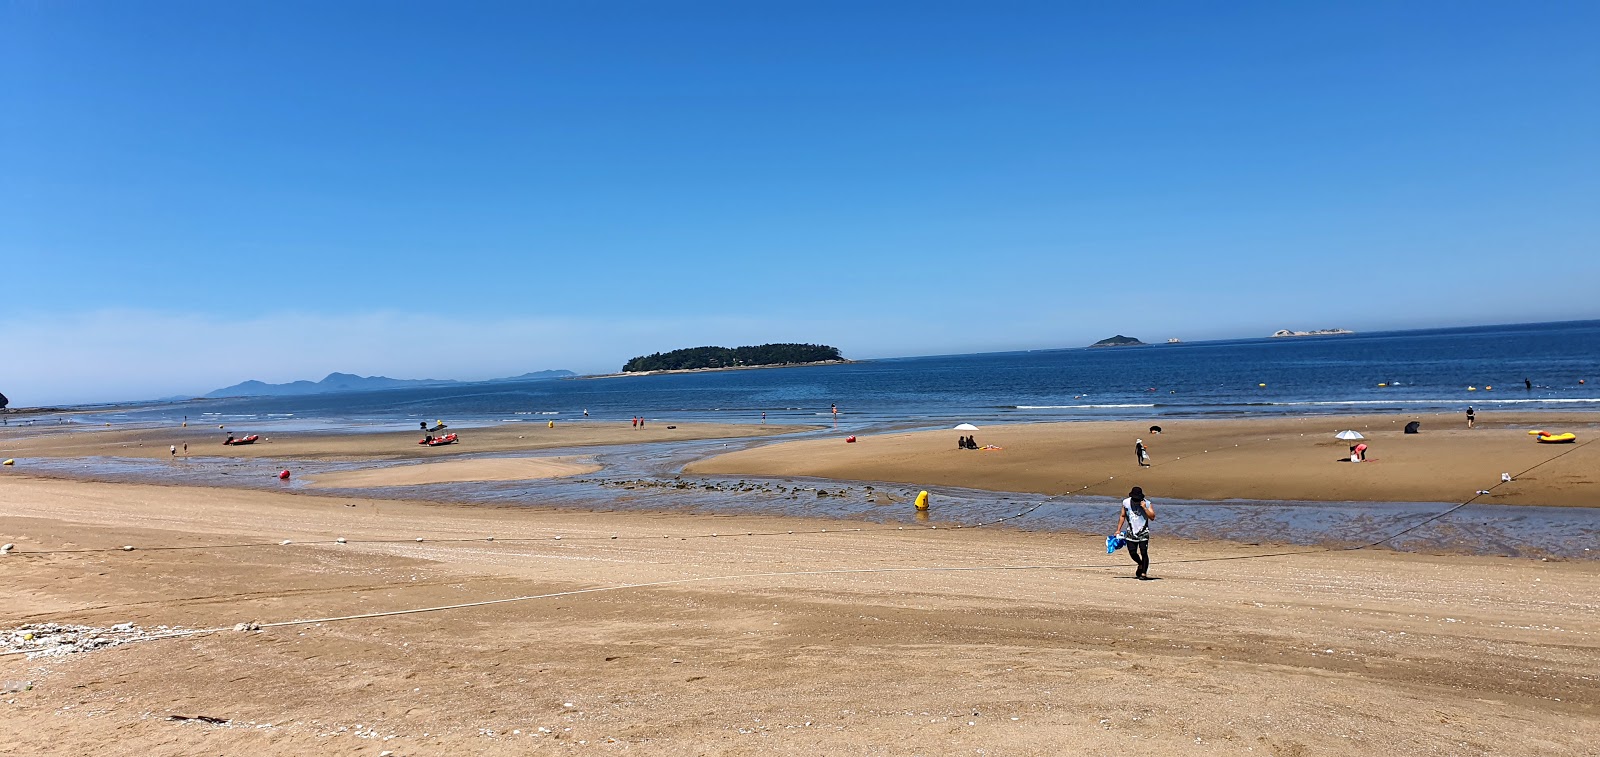 Fotografie cu Gosapo Beach - locul popular printre cunoscătorii de relaxare